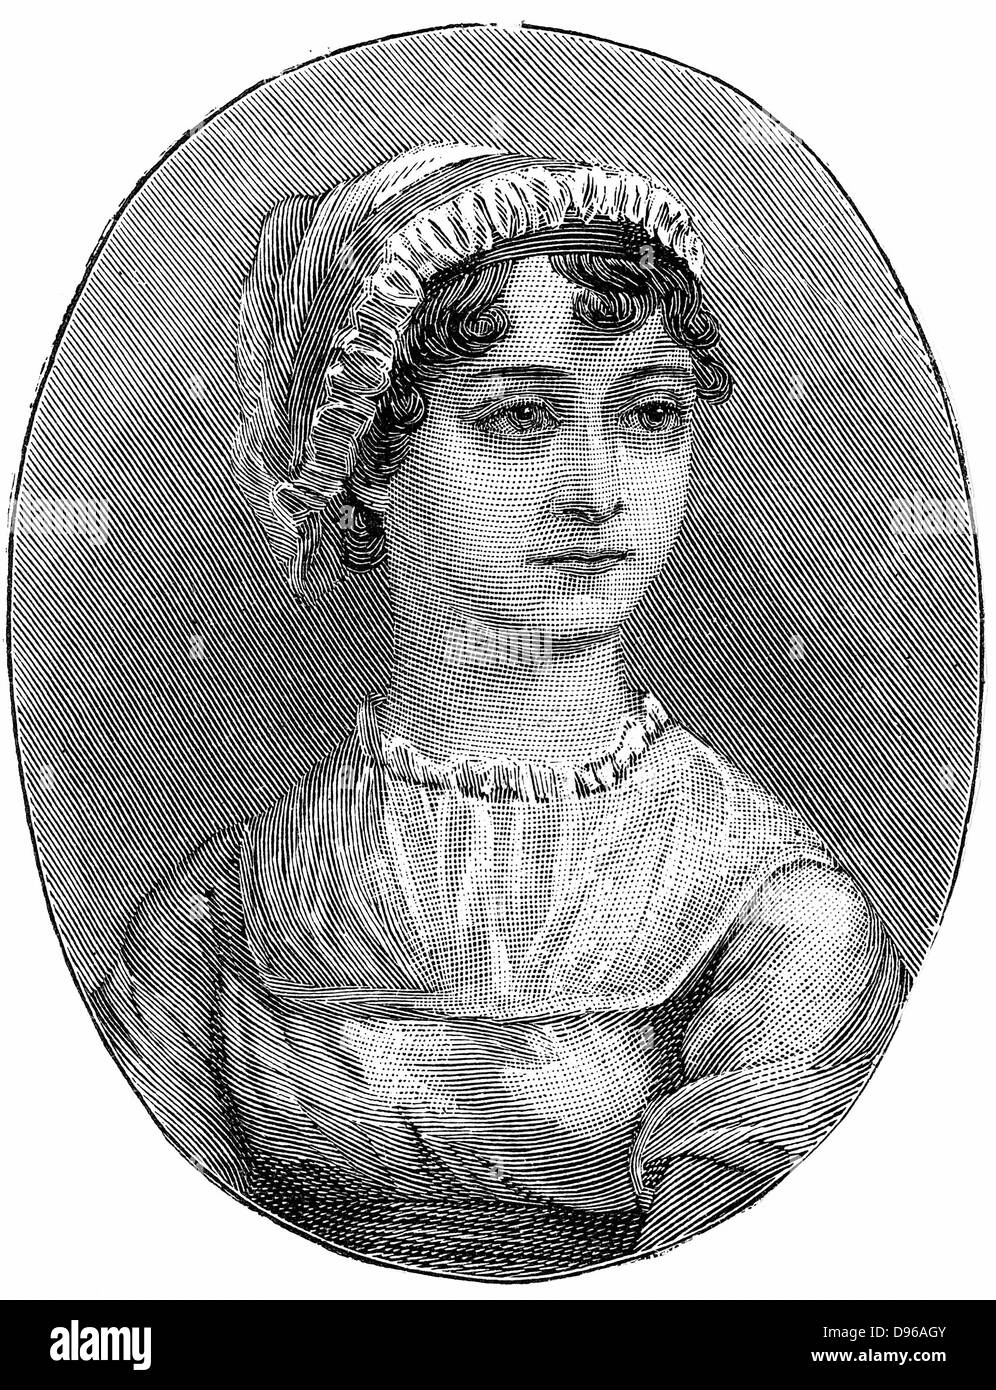 Jane Austen (1775-1817), romancier anglais connu pour ses six grands romans "sens et sensibilité', 'Orgueil et préjugés', 'Mansfield Park", "Emma", "persuasion" et "Northanger Abbey". La gravure. Banque D'Images